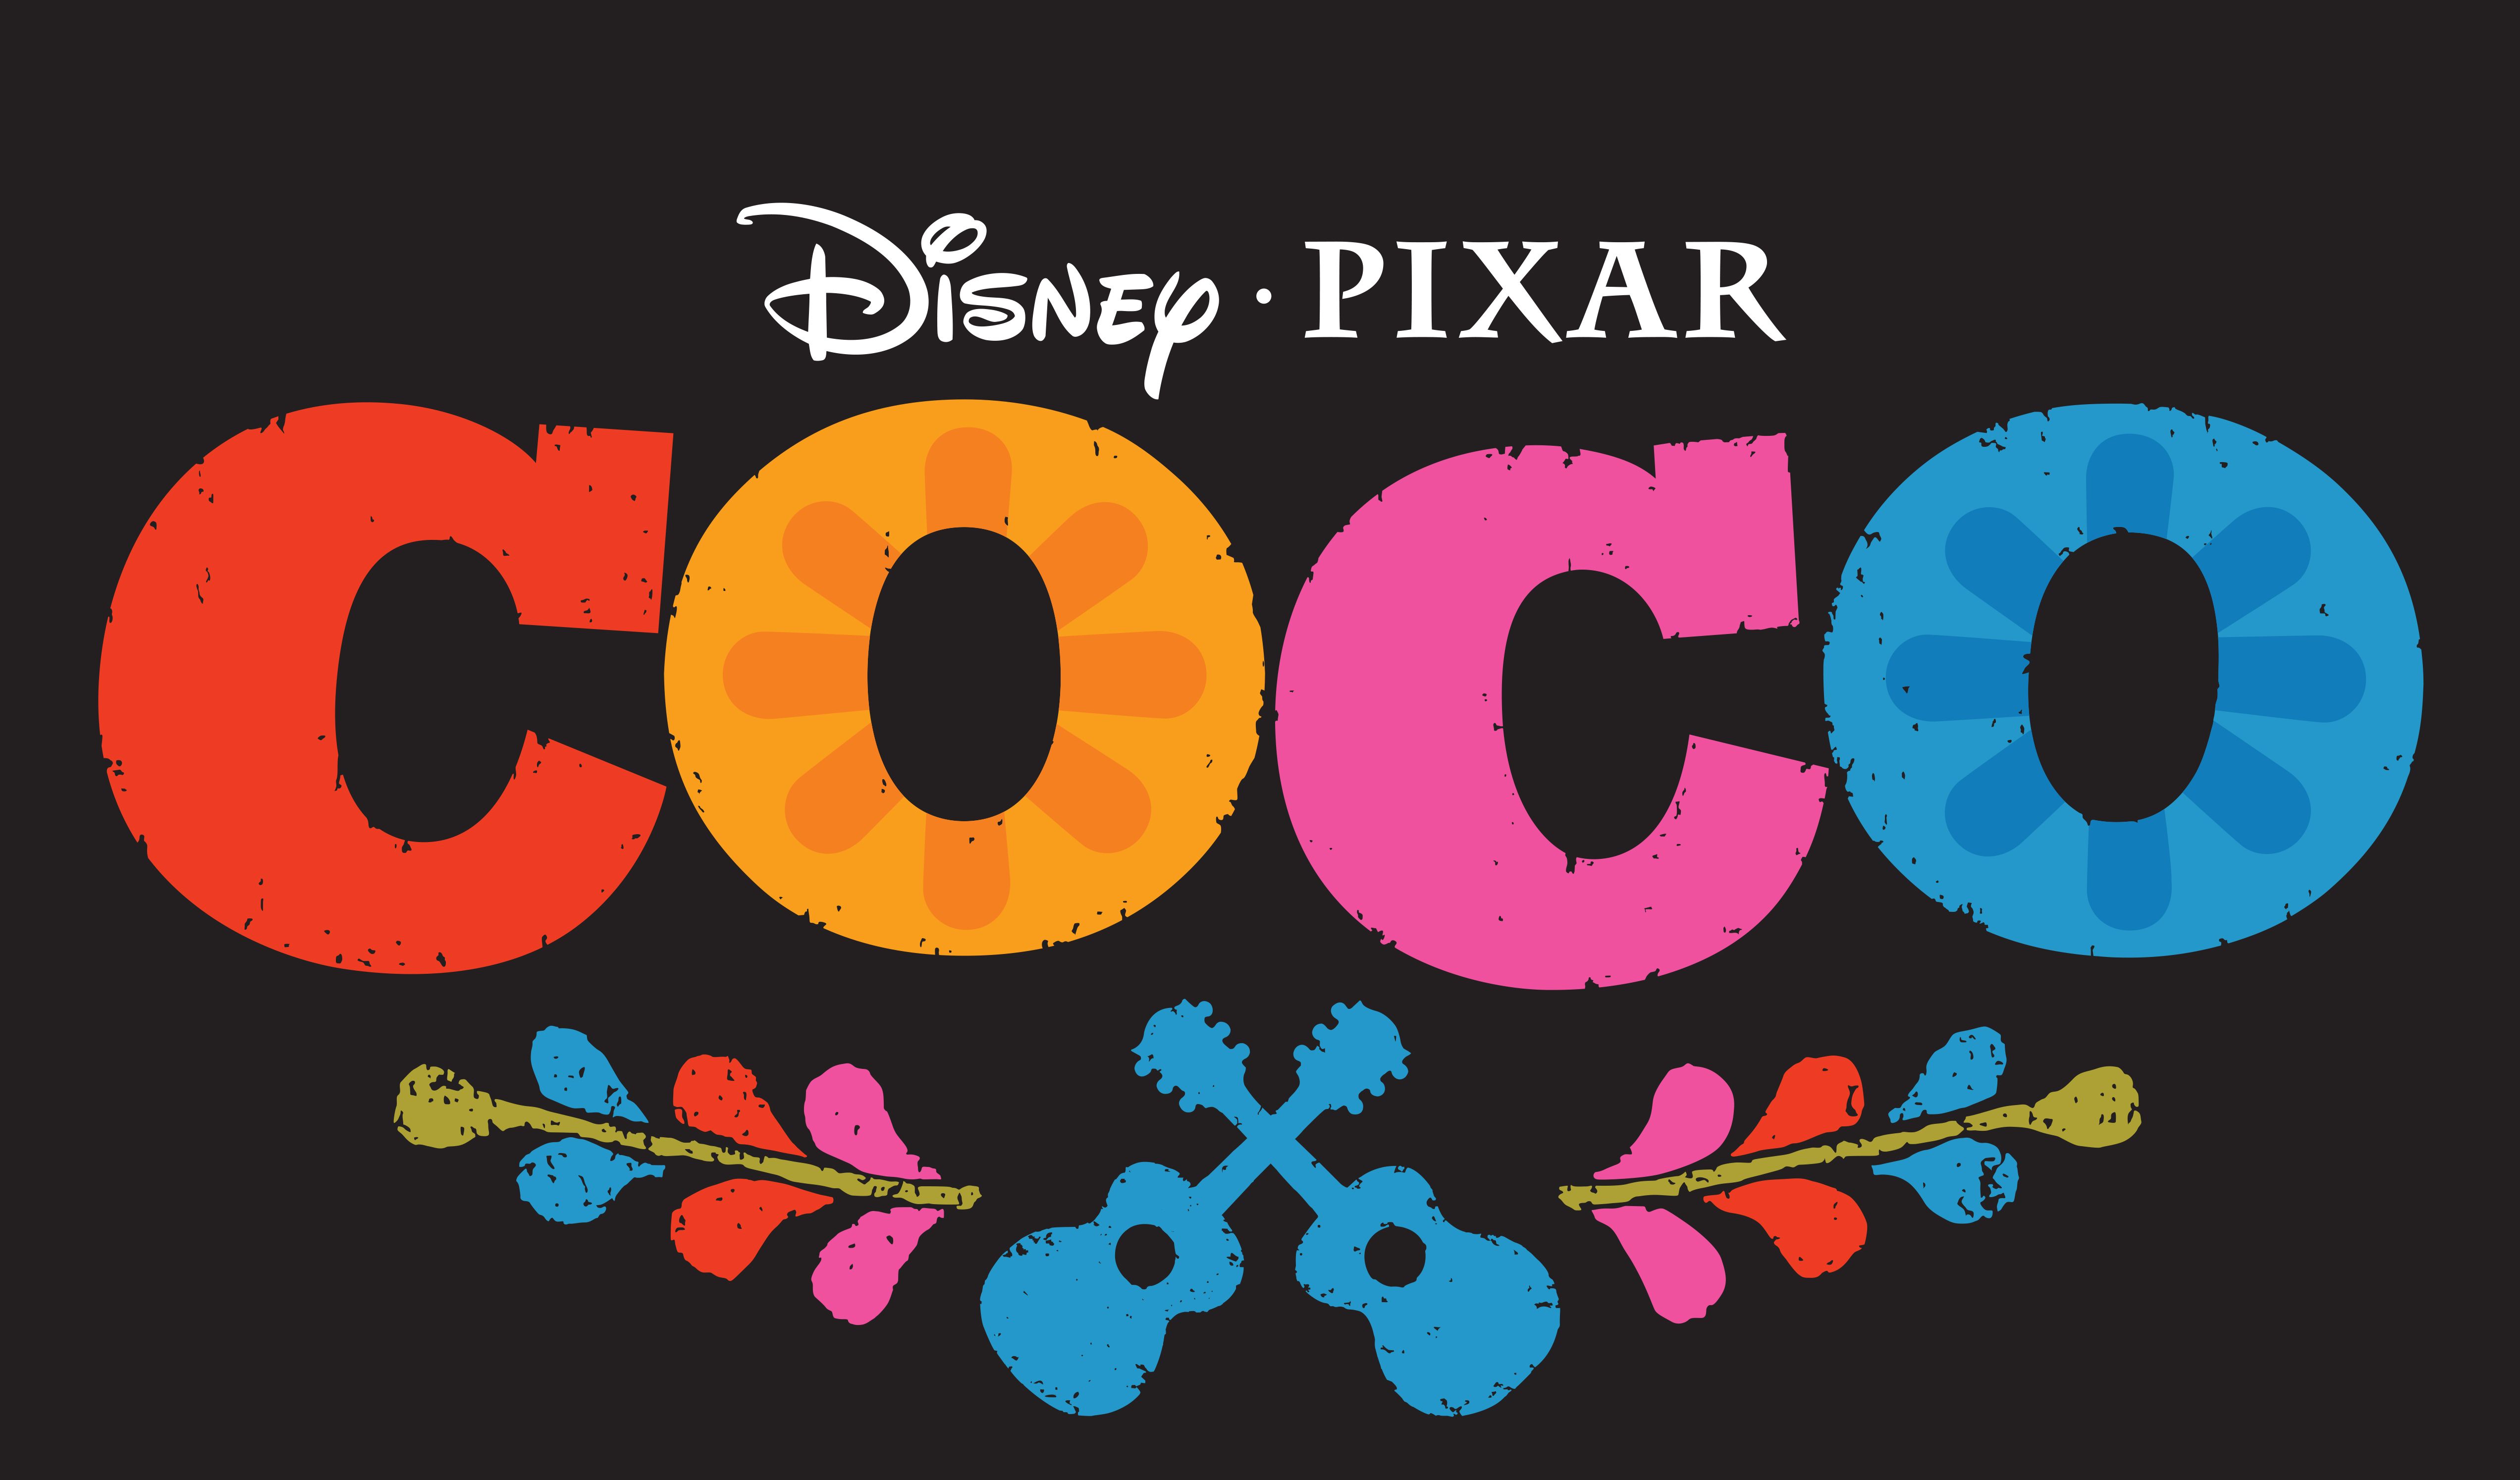 Pixar’s Coco ادای احترامی به هنرمند شمایلین فریدا کالو می کند